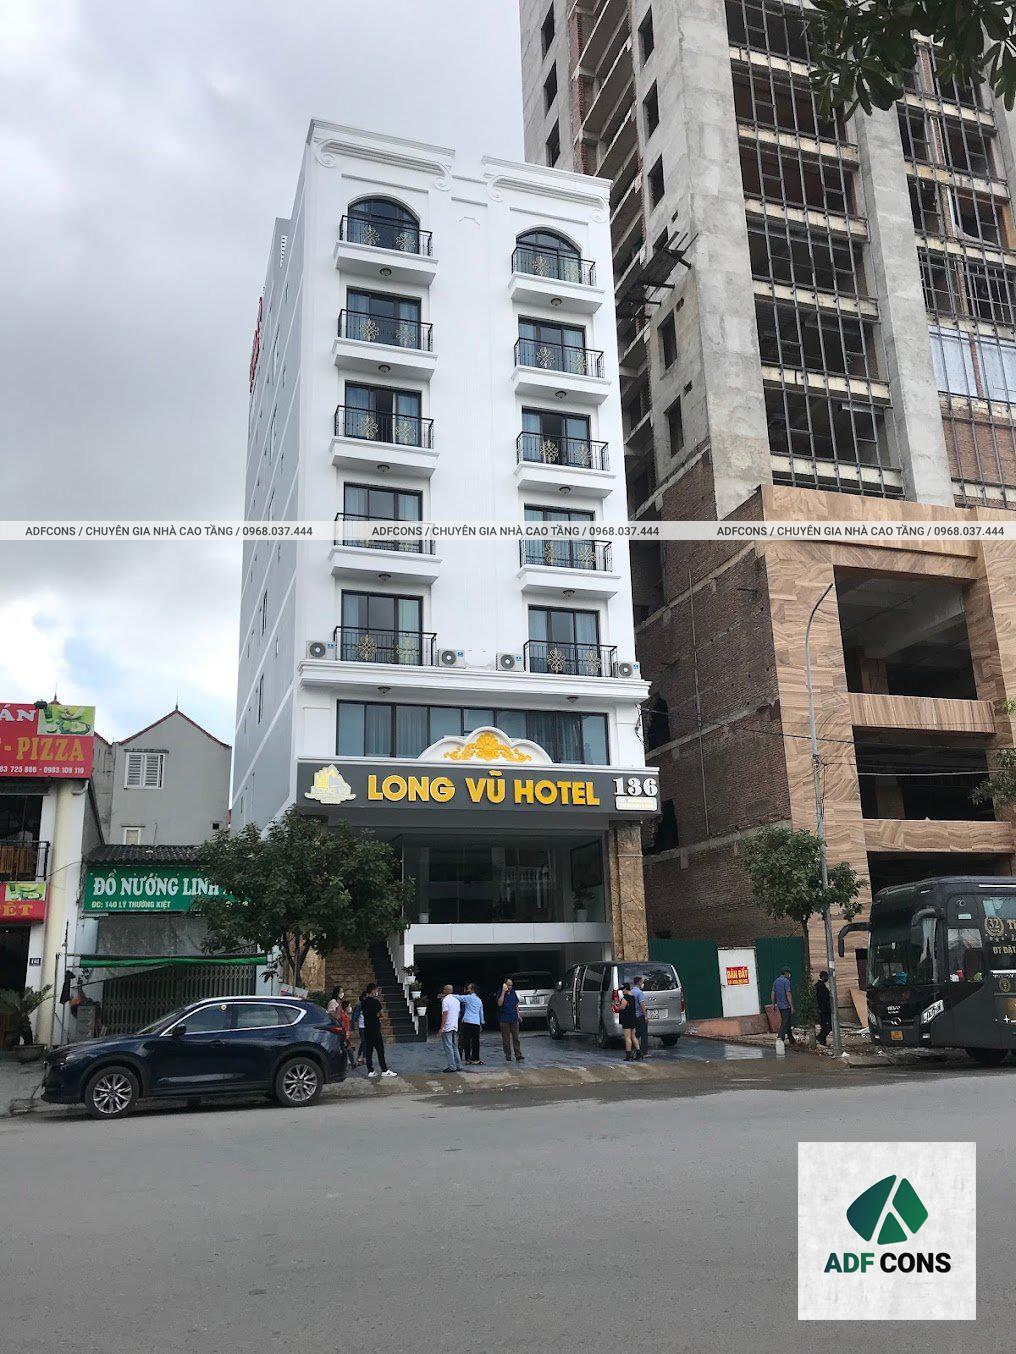 Toàn cảnh công trình khách sạn 9 tầng anh Đức – Lạng Sơn